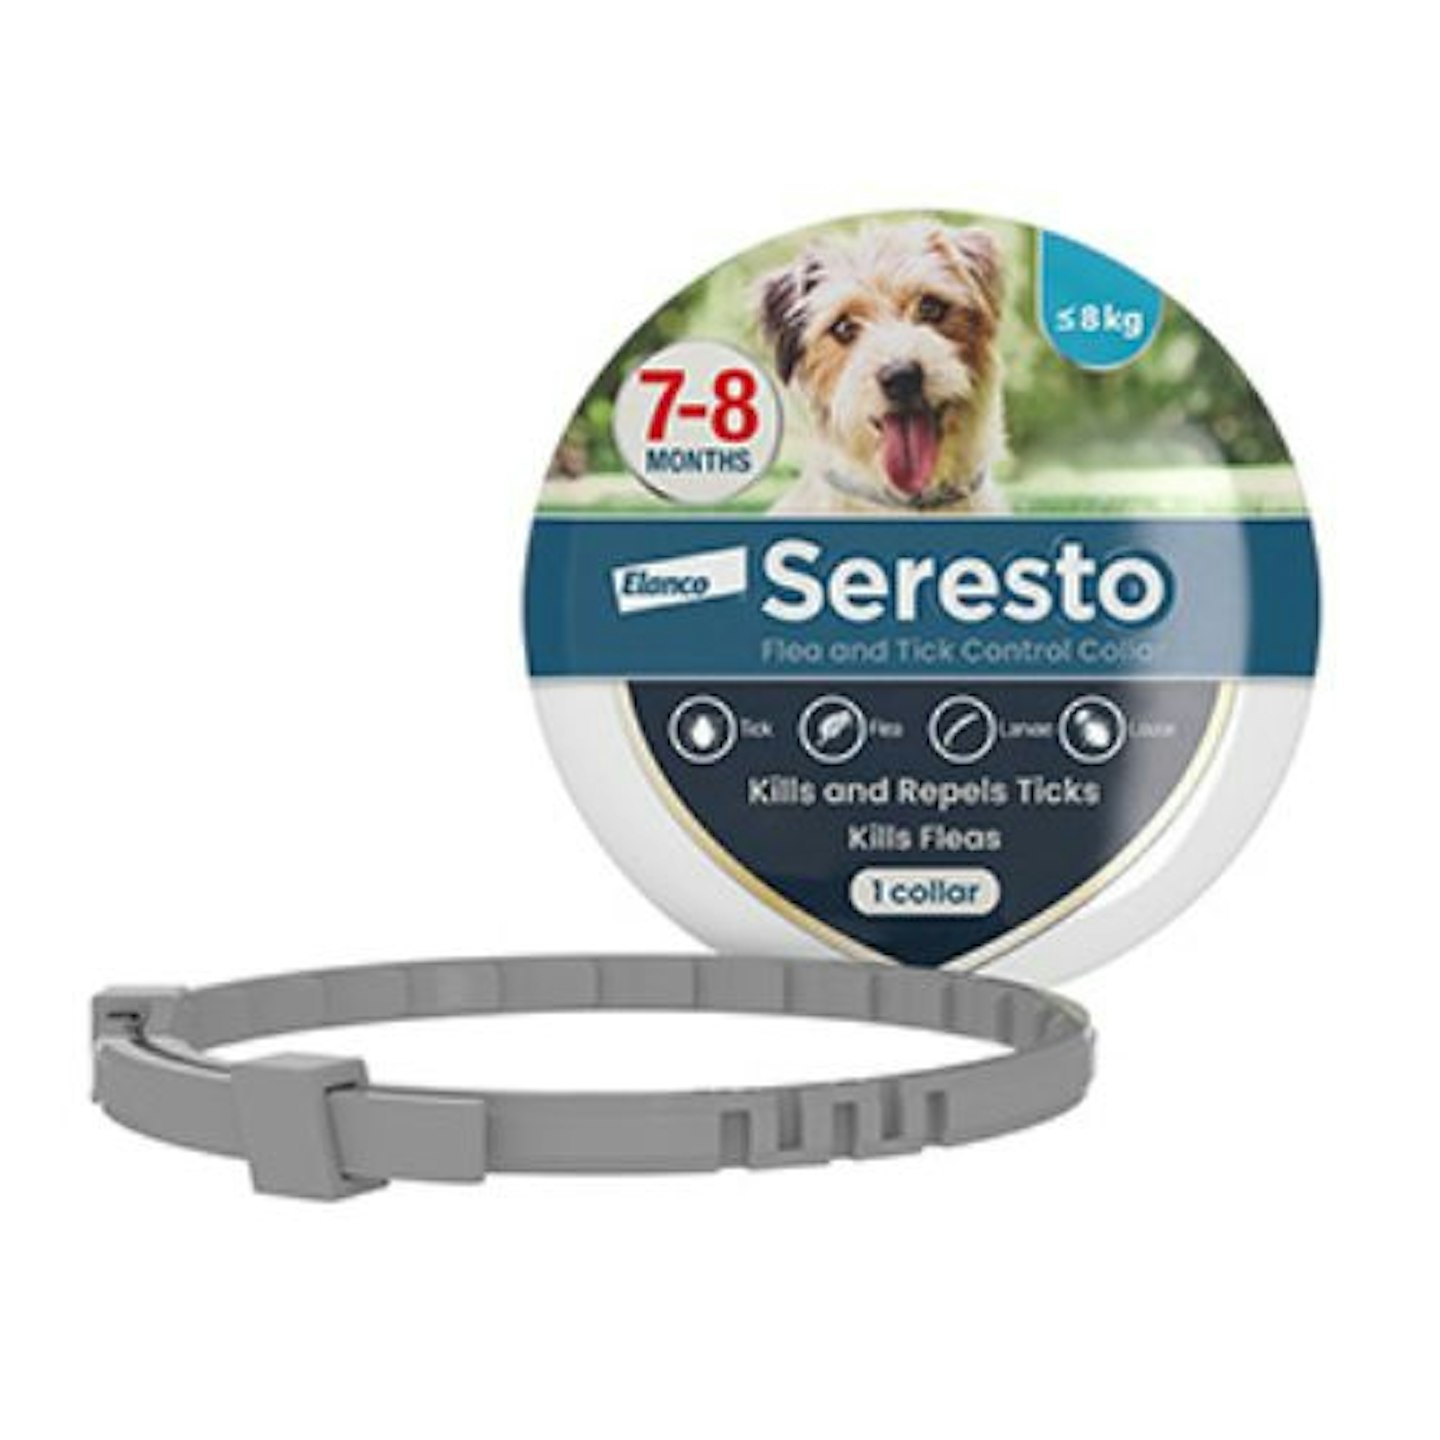 Seresto Flea and Tick Control Collar for Dogs